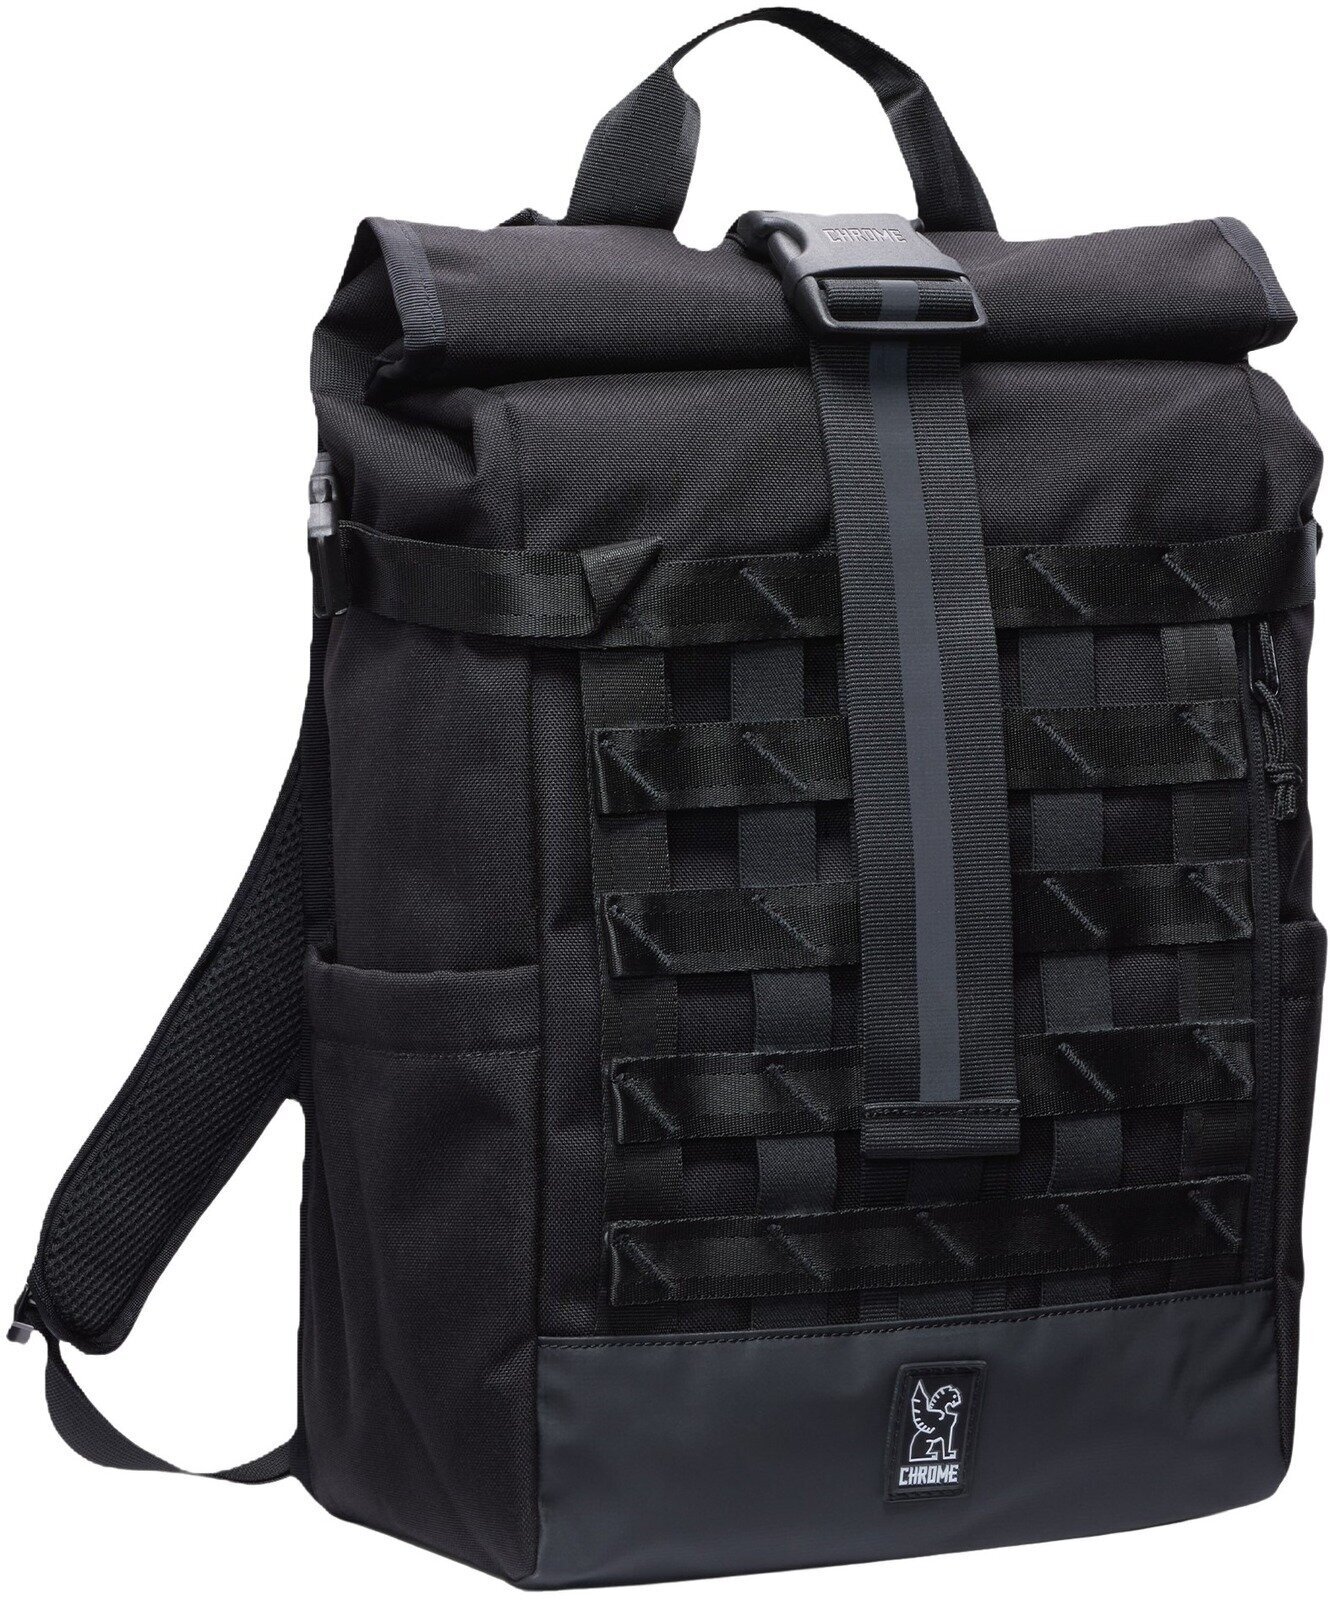 Lifestyle Backpack / Bag Chrome Barrage Backpack Black 18 L Backpack